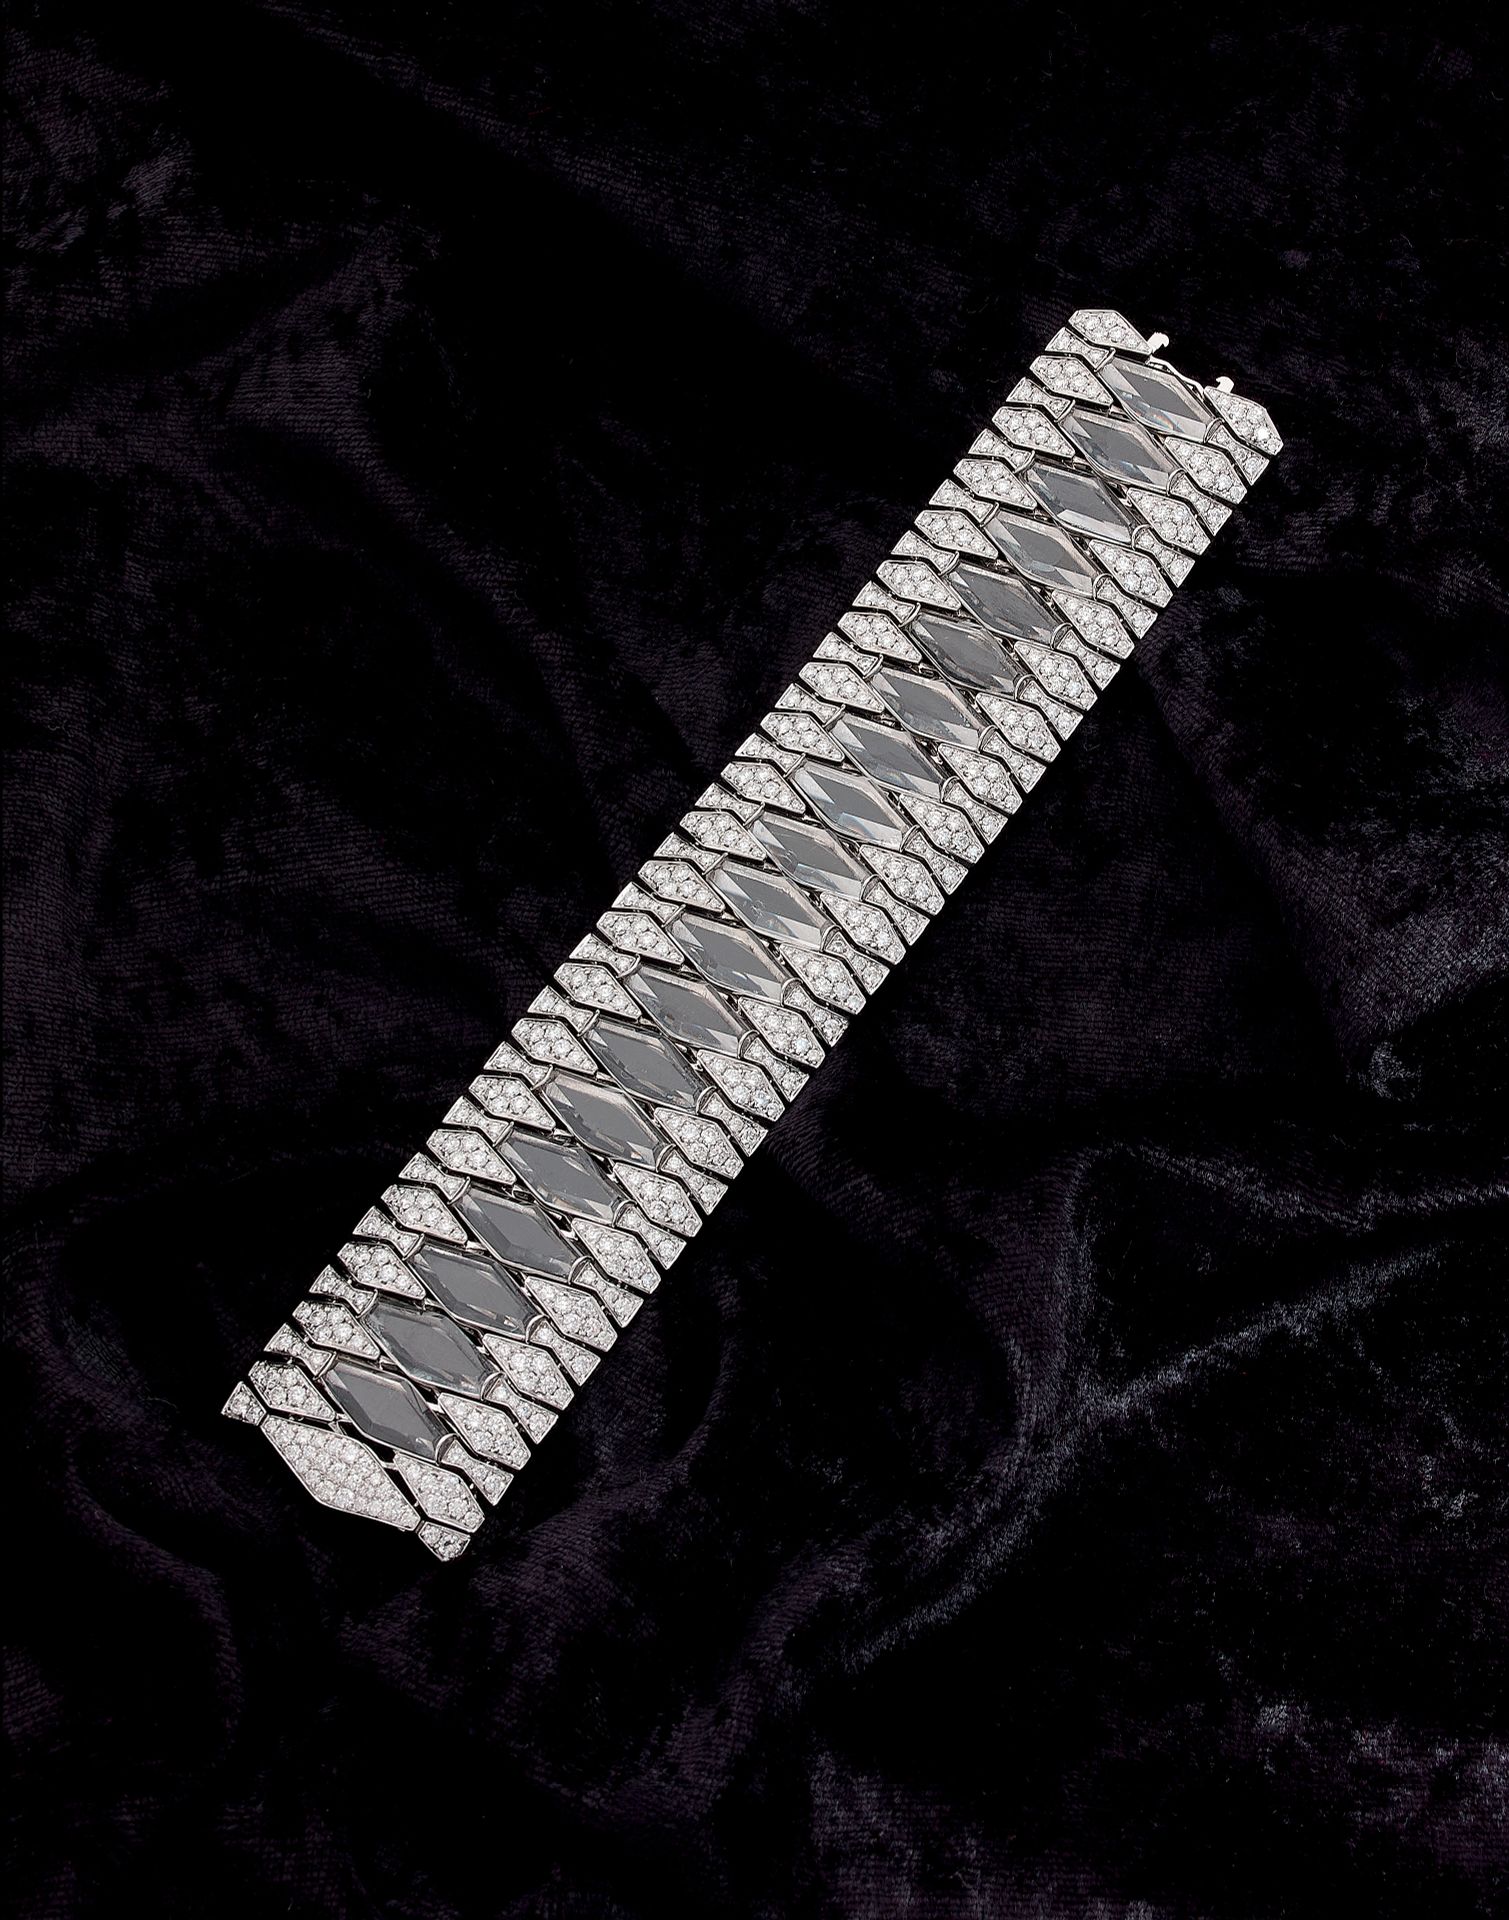 Null 重要的手镯 

持有一个几何设计，在明亮式切割钻石的镶嵌下有一排岩石水晶。镶嵌在18K白金中。

长度：17.50厘米。 

宽度：3.20厘米。

&hellip;